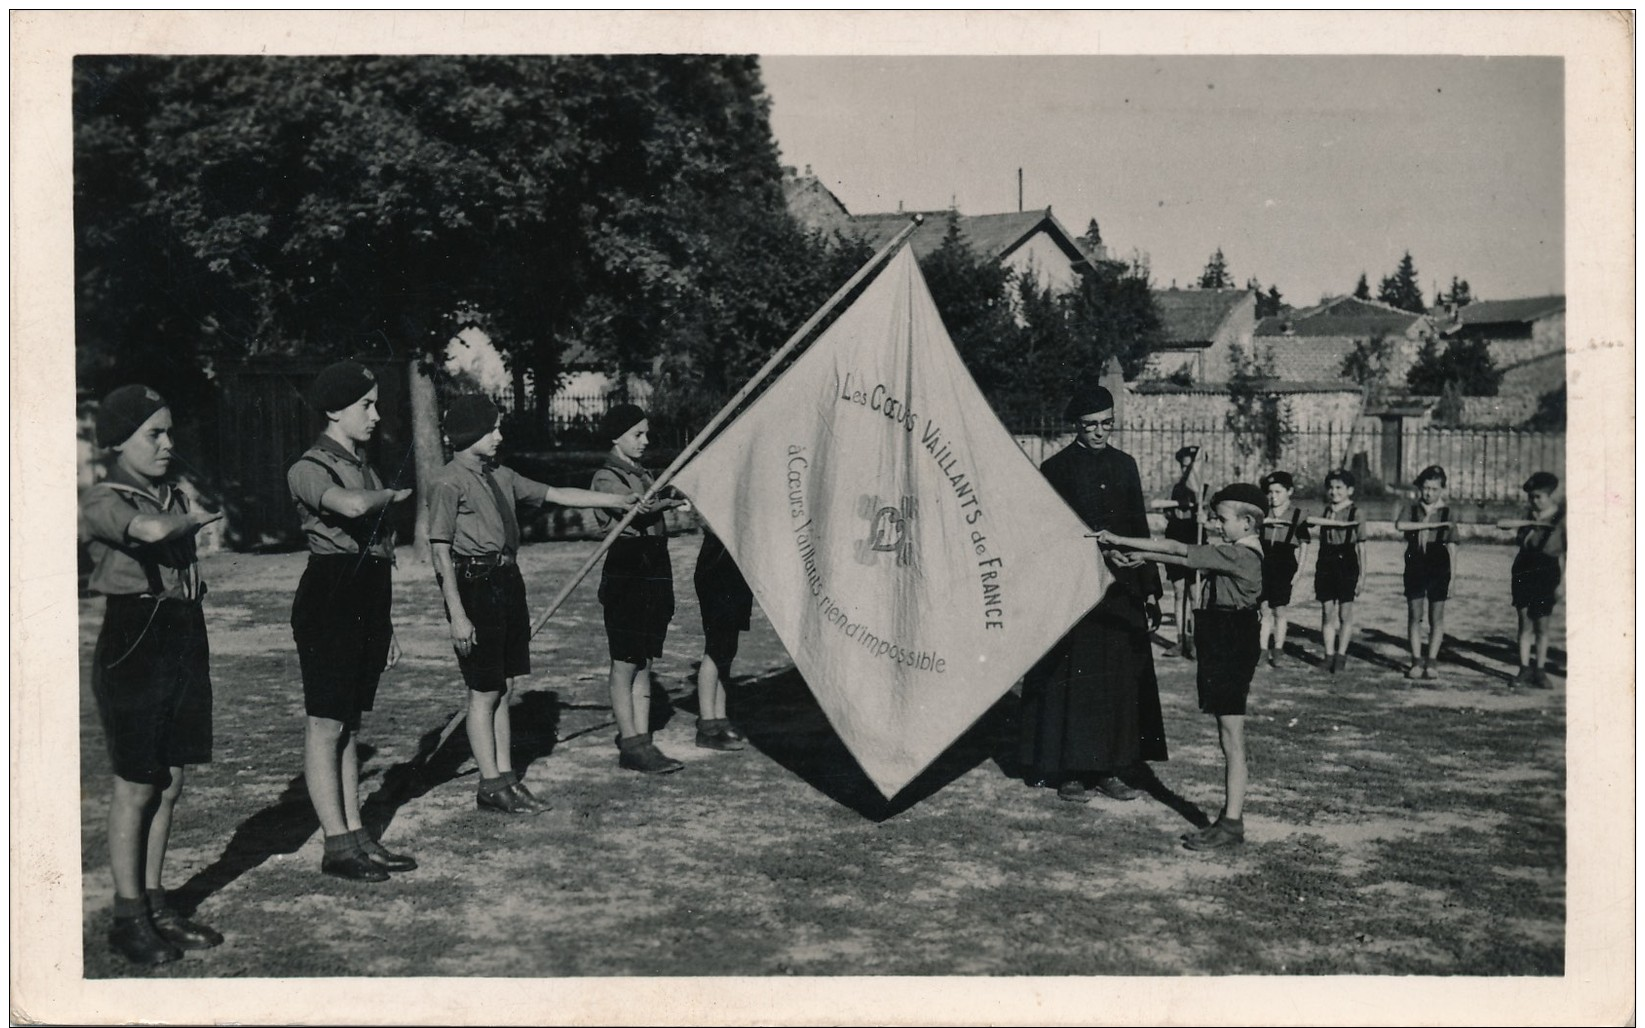 H121 - SCOUTISME - Coeurs Vaillants - St-Jacques Des Etats Unis - Lyon - Promesse De Croix Bleue - Août 1944 - Scoutismo